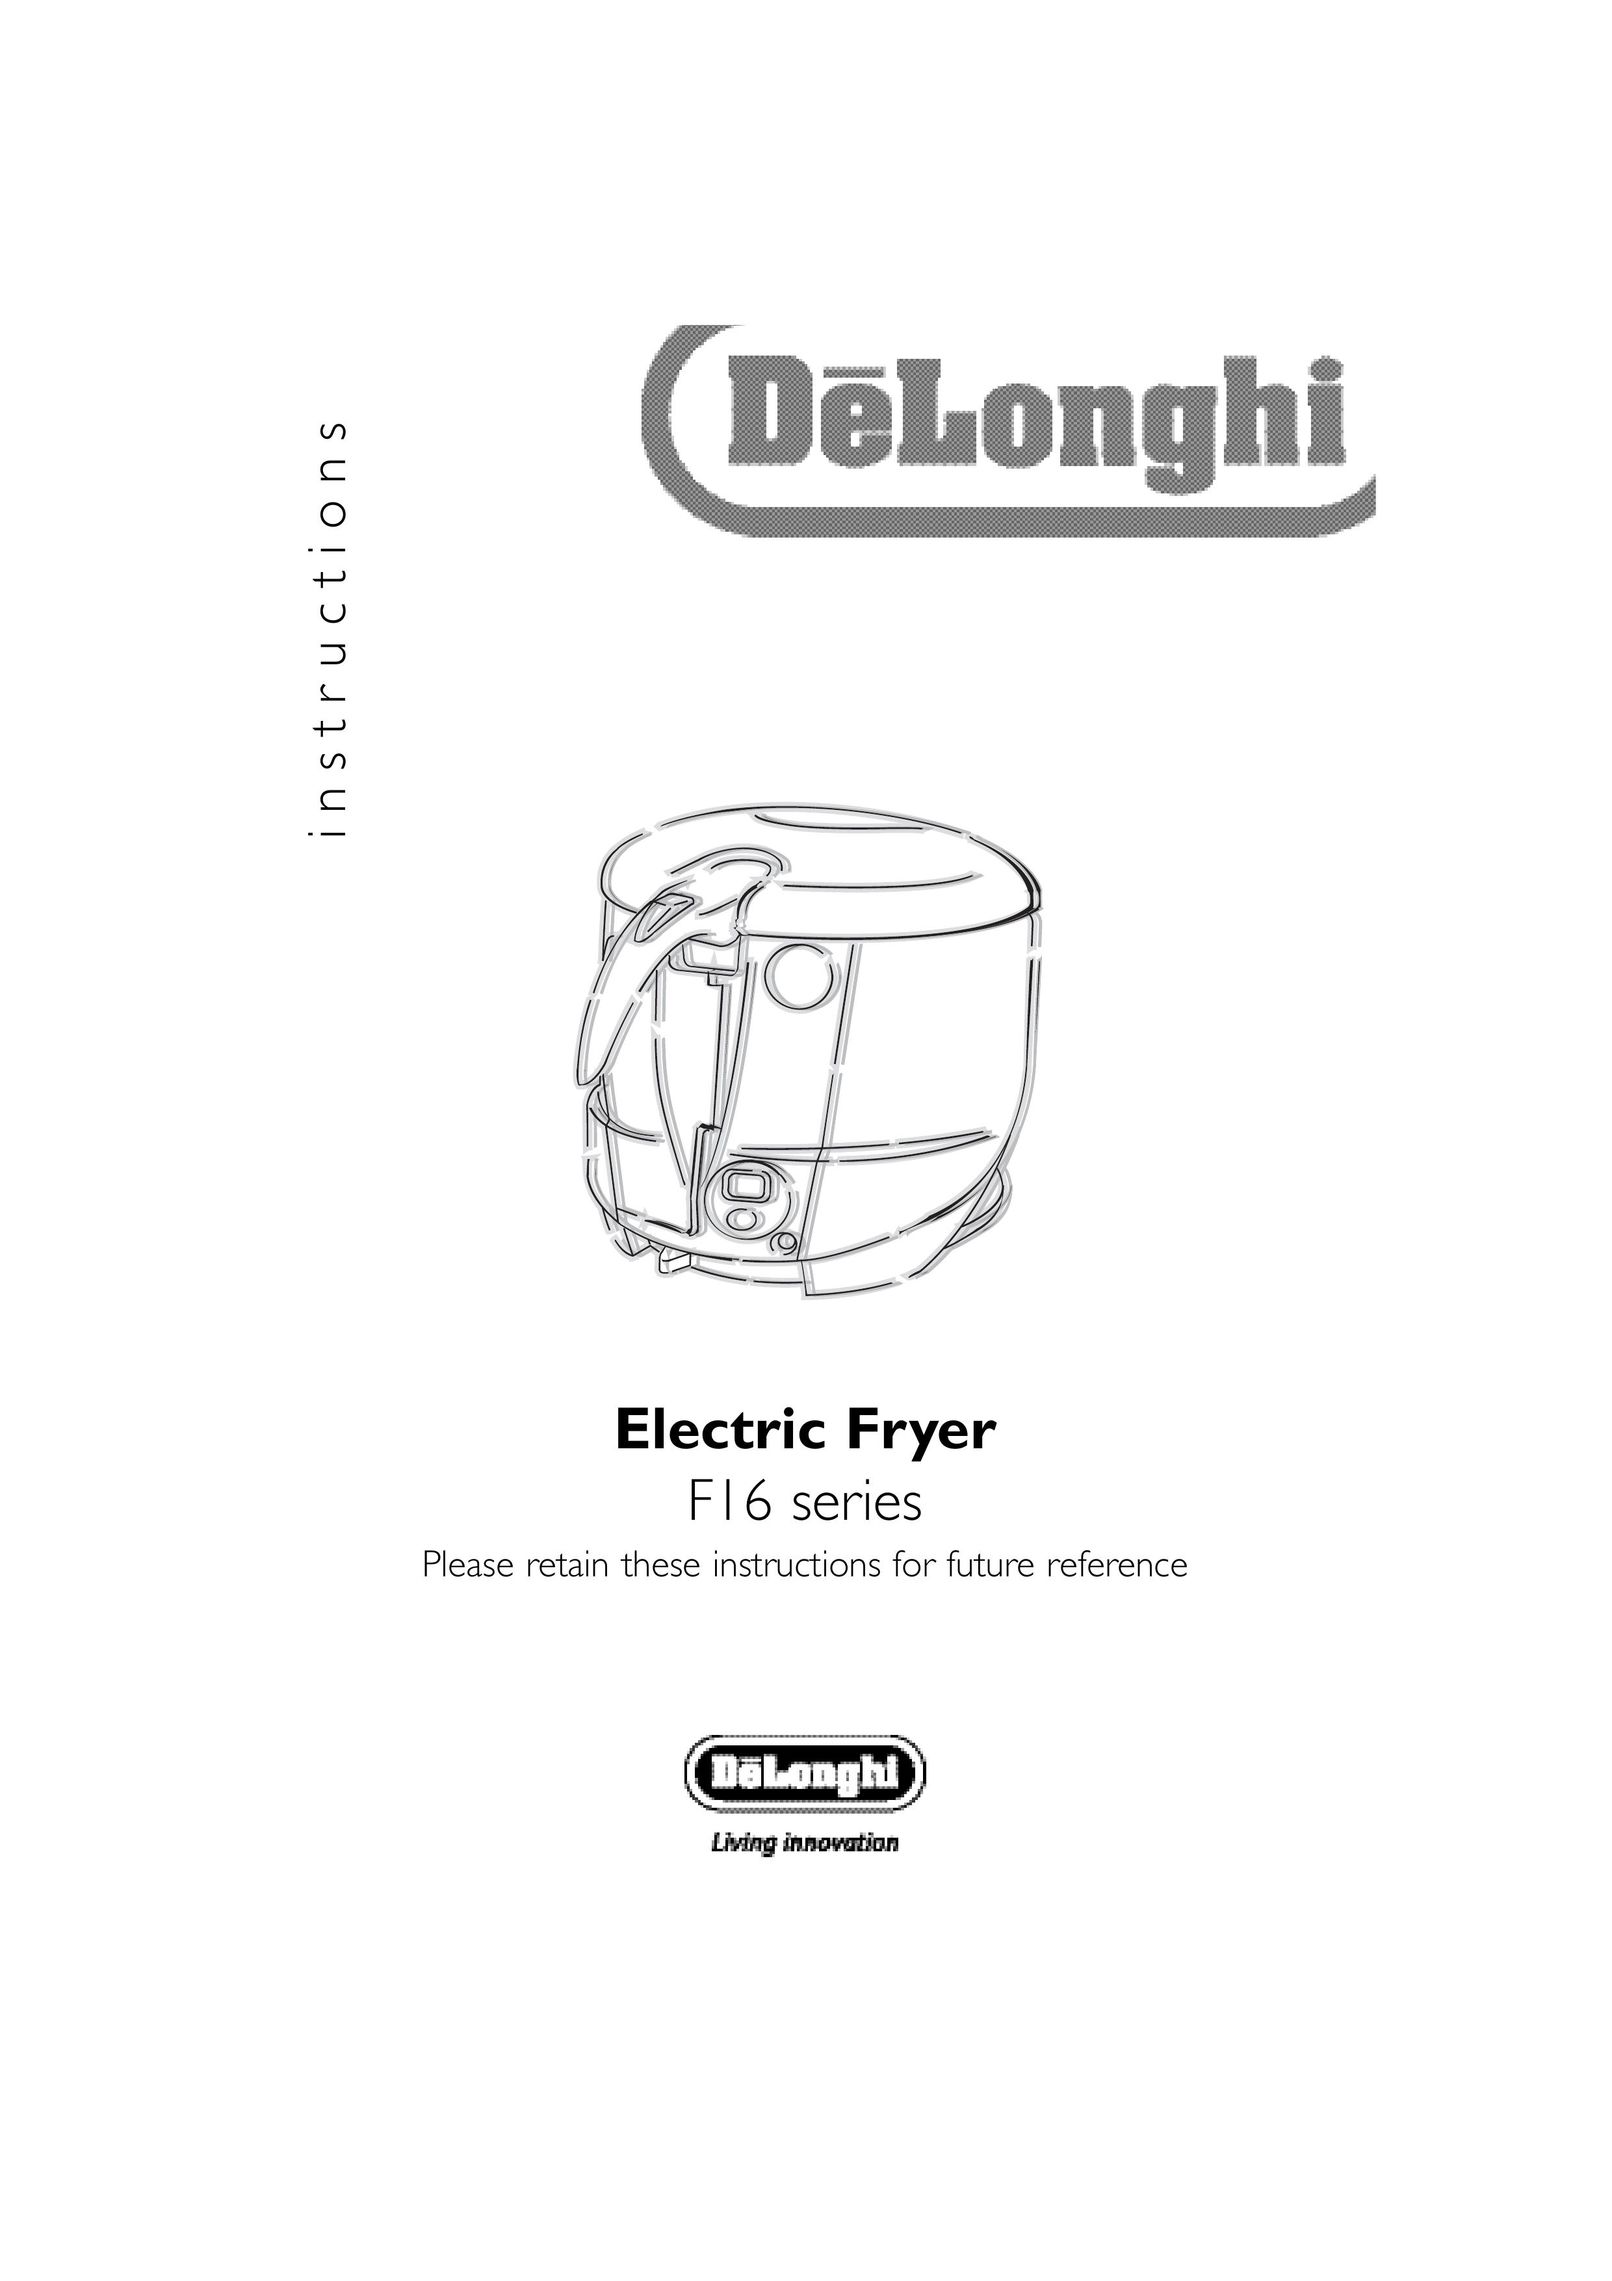 DeLonghi F16313 Fryer User Manual